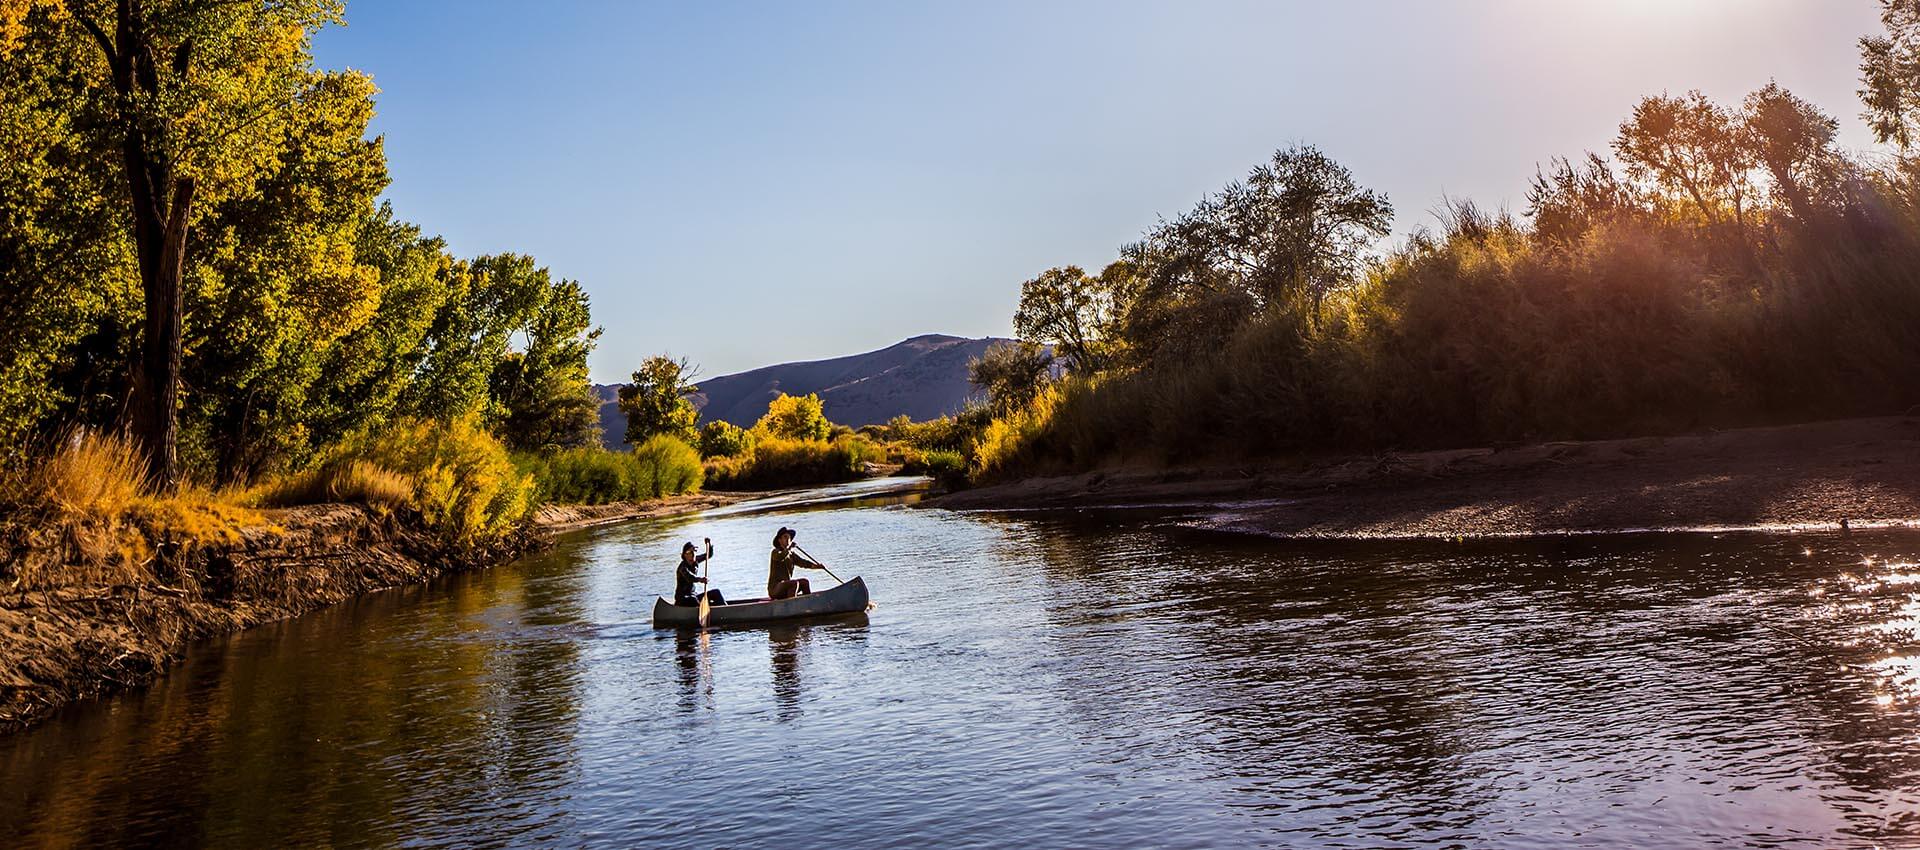 Carson River, Carson City, Nevada, Kayaking, Fishing